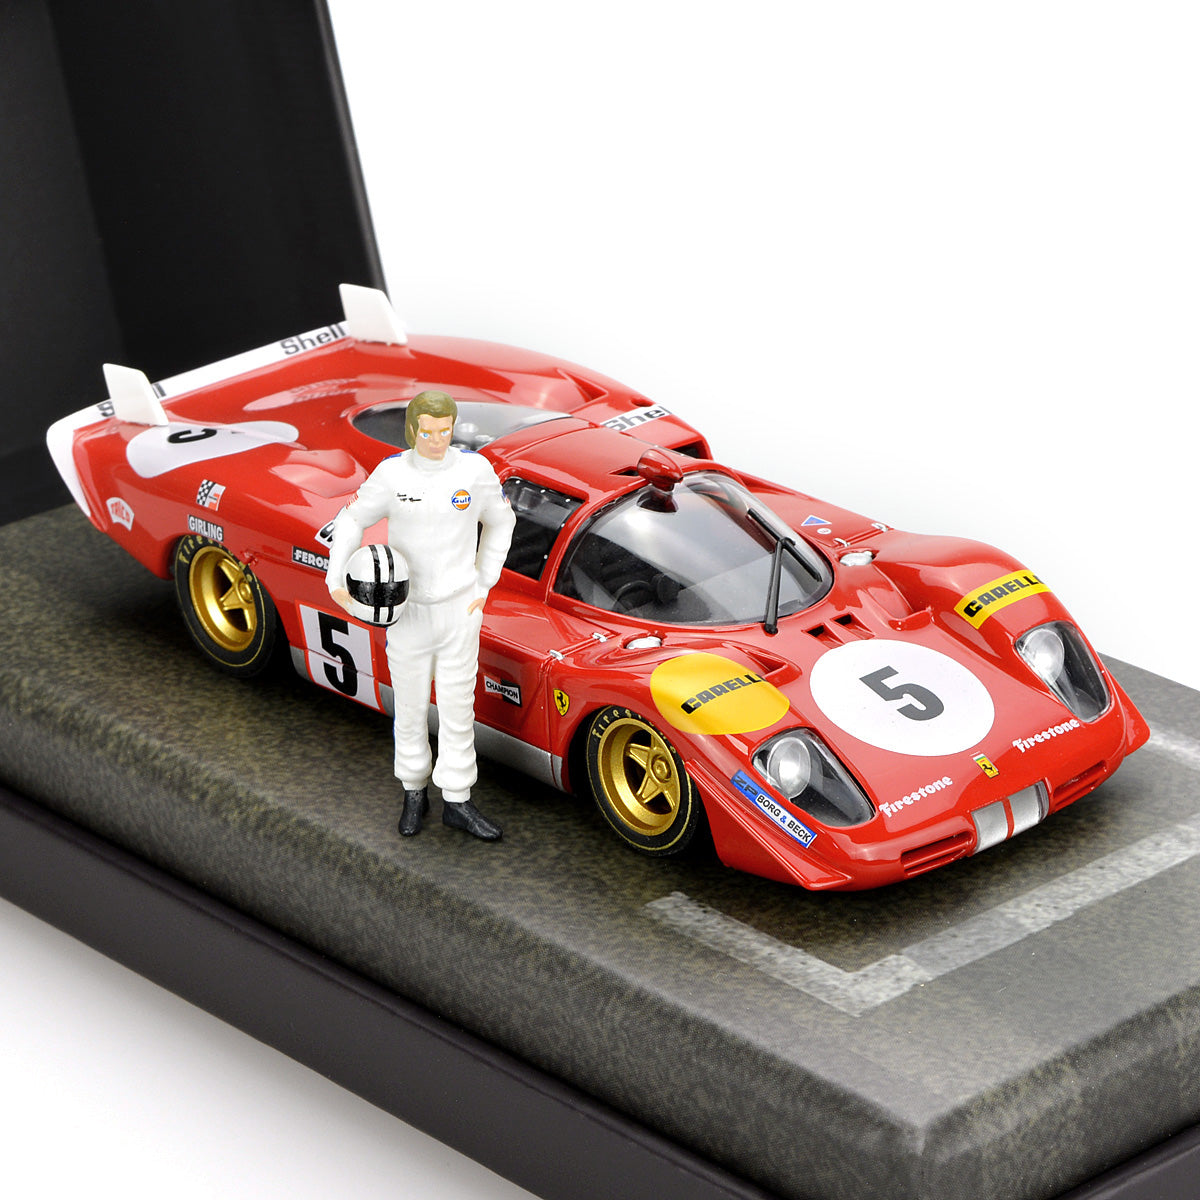 Fly E2055 1/32 Ferrari 512S No.5 Making of Le Mans with Steve Mcqueen Figure Slot Car - Hobbytech Toys